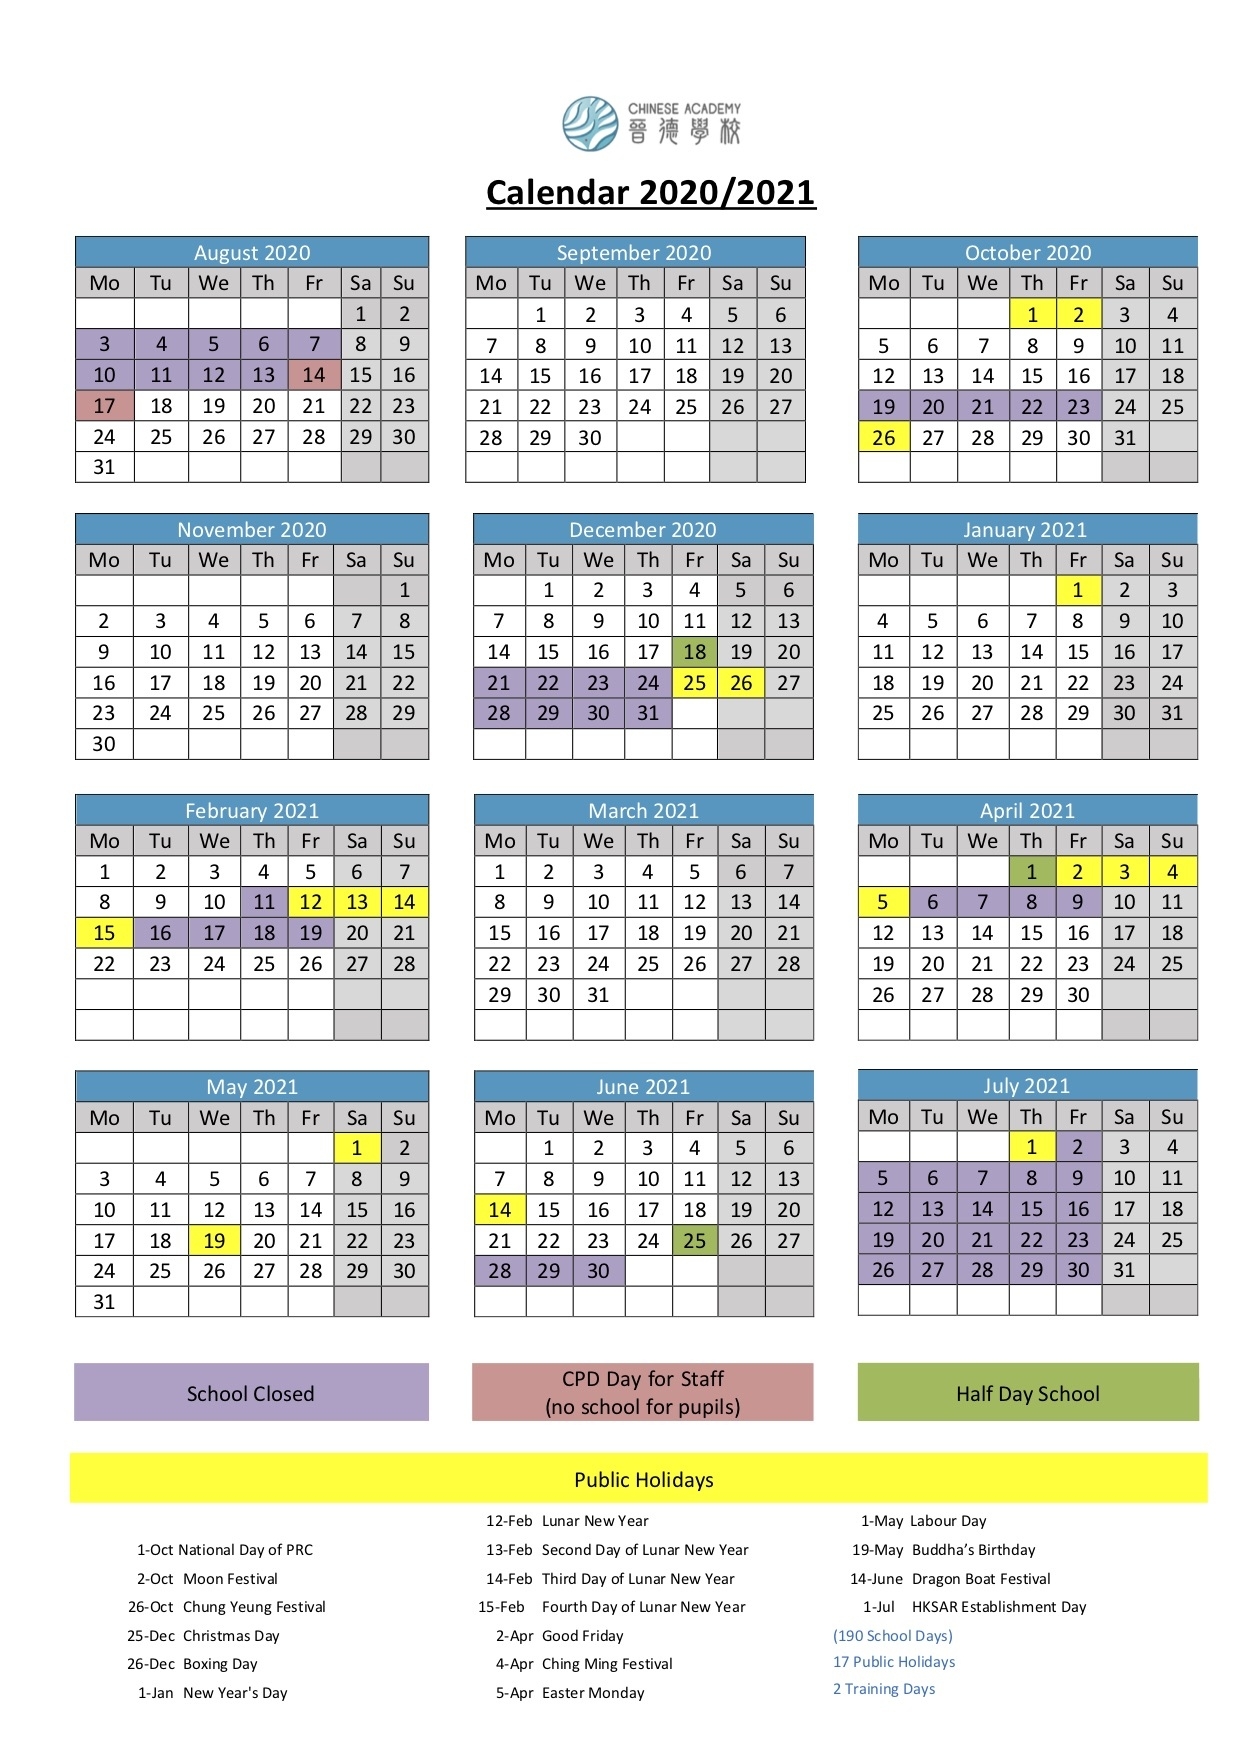 School Calendar 2020/2021 - International Chinese Academy 晉 2021 Calendar Hong Kong